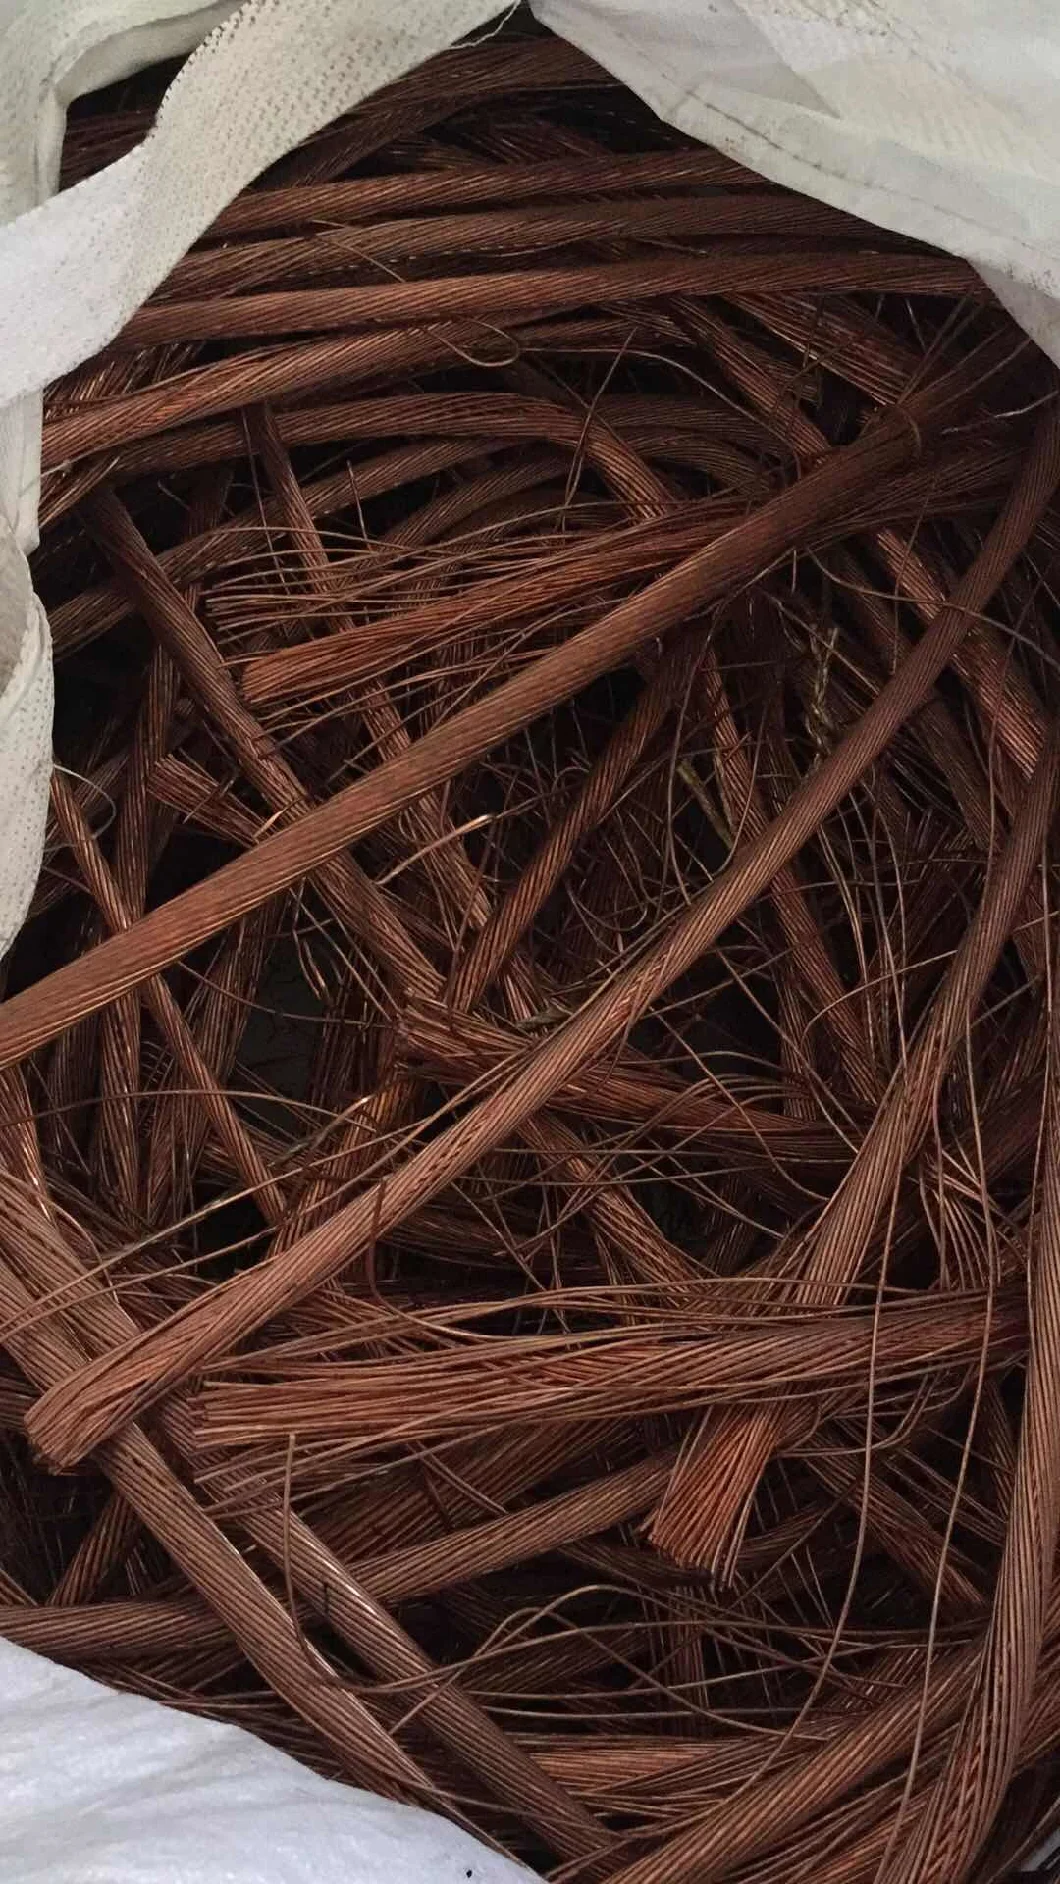 Chinese Copper Wire Scrap 99.99% Copper Scrap Mill-Berry 99.99% Copper Mill Berry Scrap